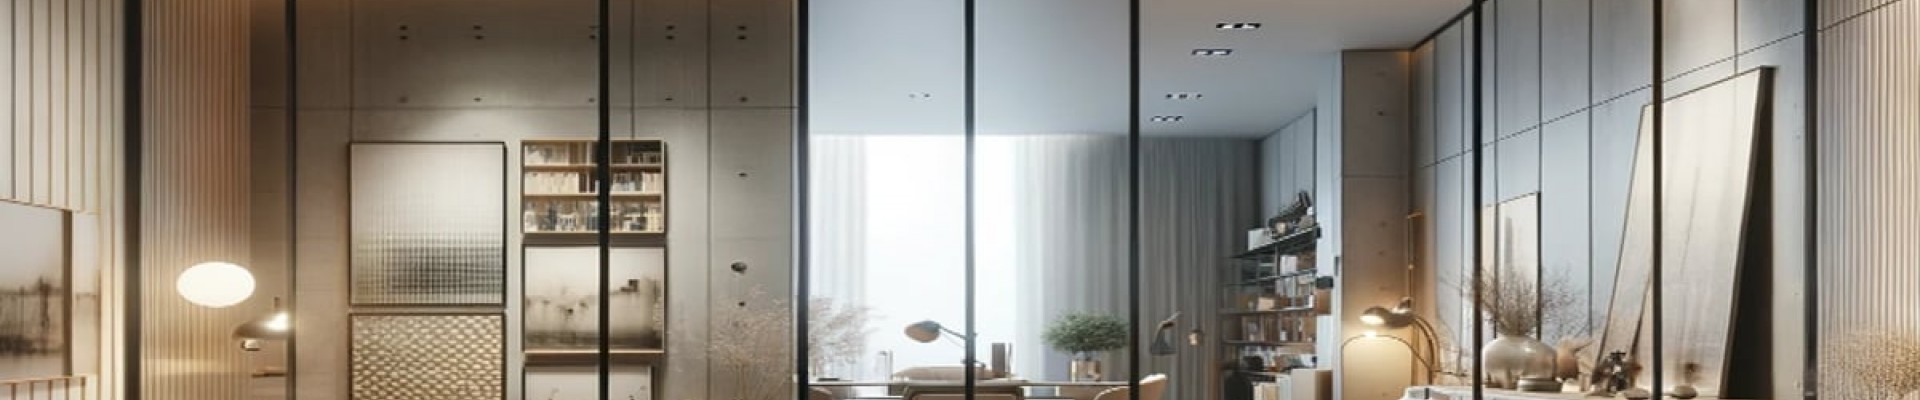 Алюминиевые двери и перегородки от Elegante: Идеальное сочетание стиля, функциональности и качества